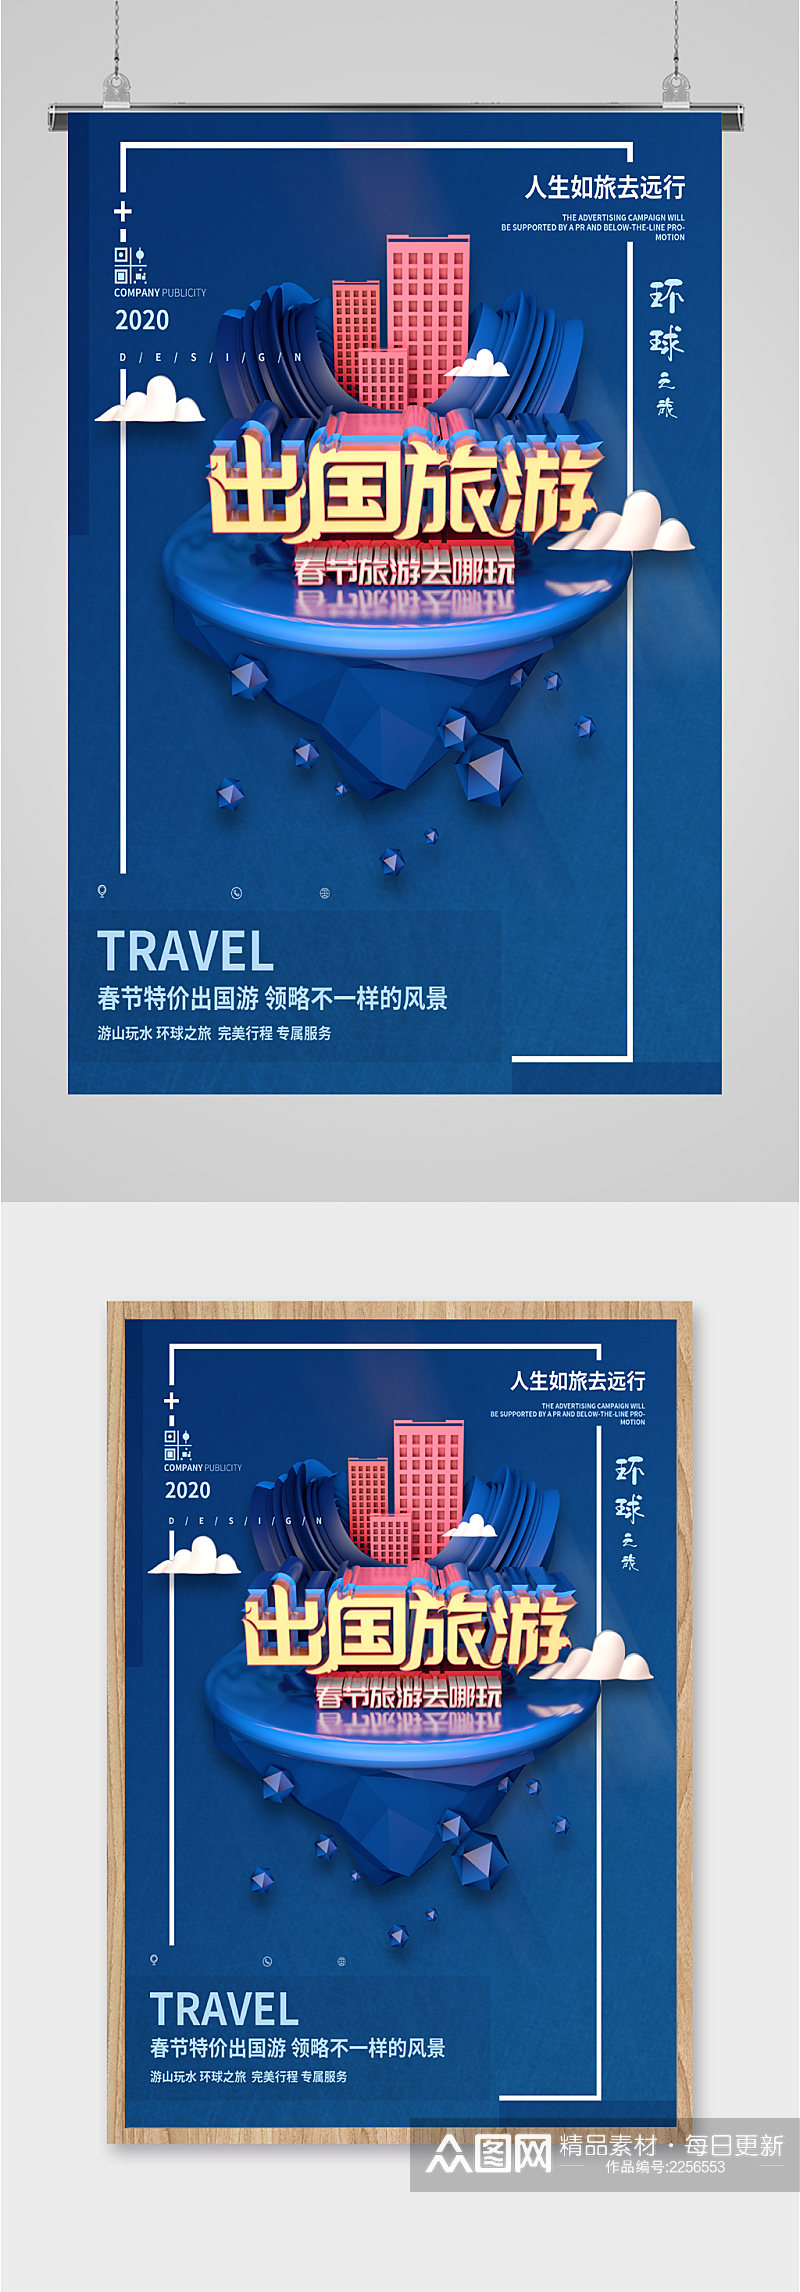 春节旅游出国旅游海报素材